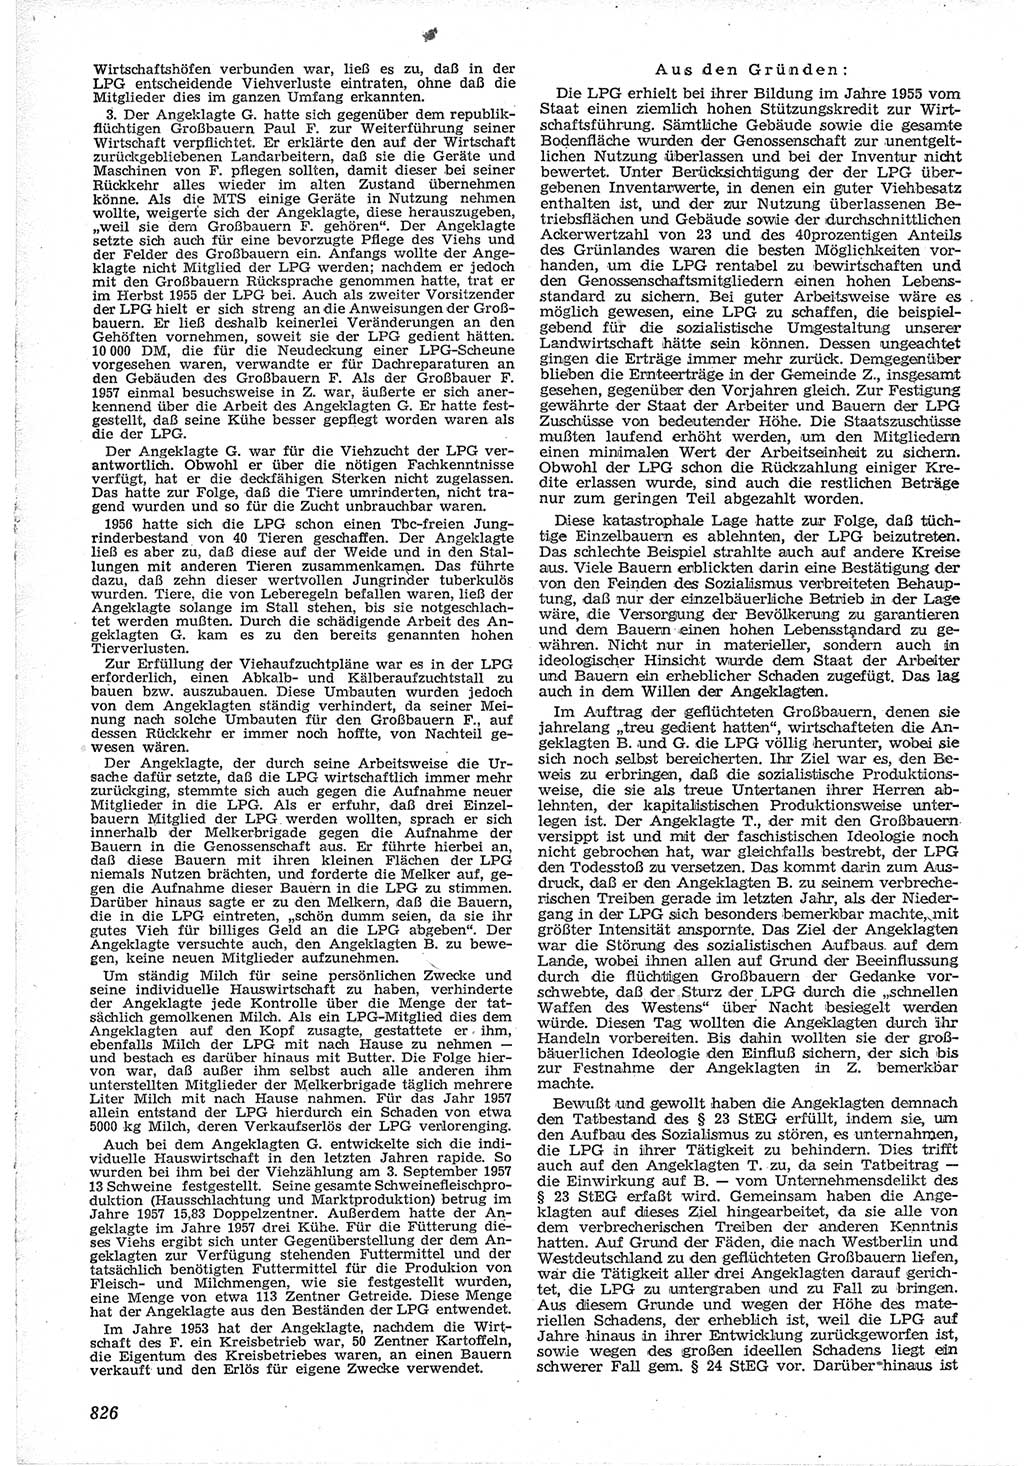 Neue Justiz (NJ), Zeitschrift für Recht und Rechtswissenschaft [Deutsche Demokratische Republik (DDR)], 12. Jahrgang 1958, Seite 826 (NJ DDR 1958, S. 826)